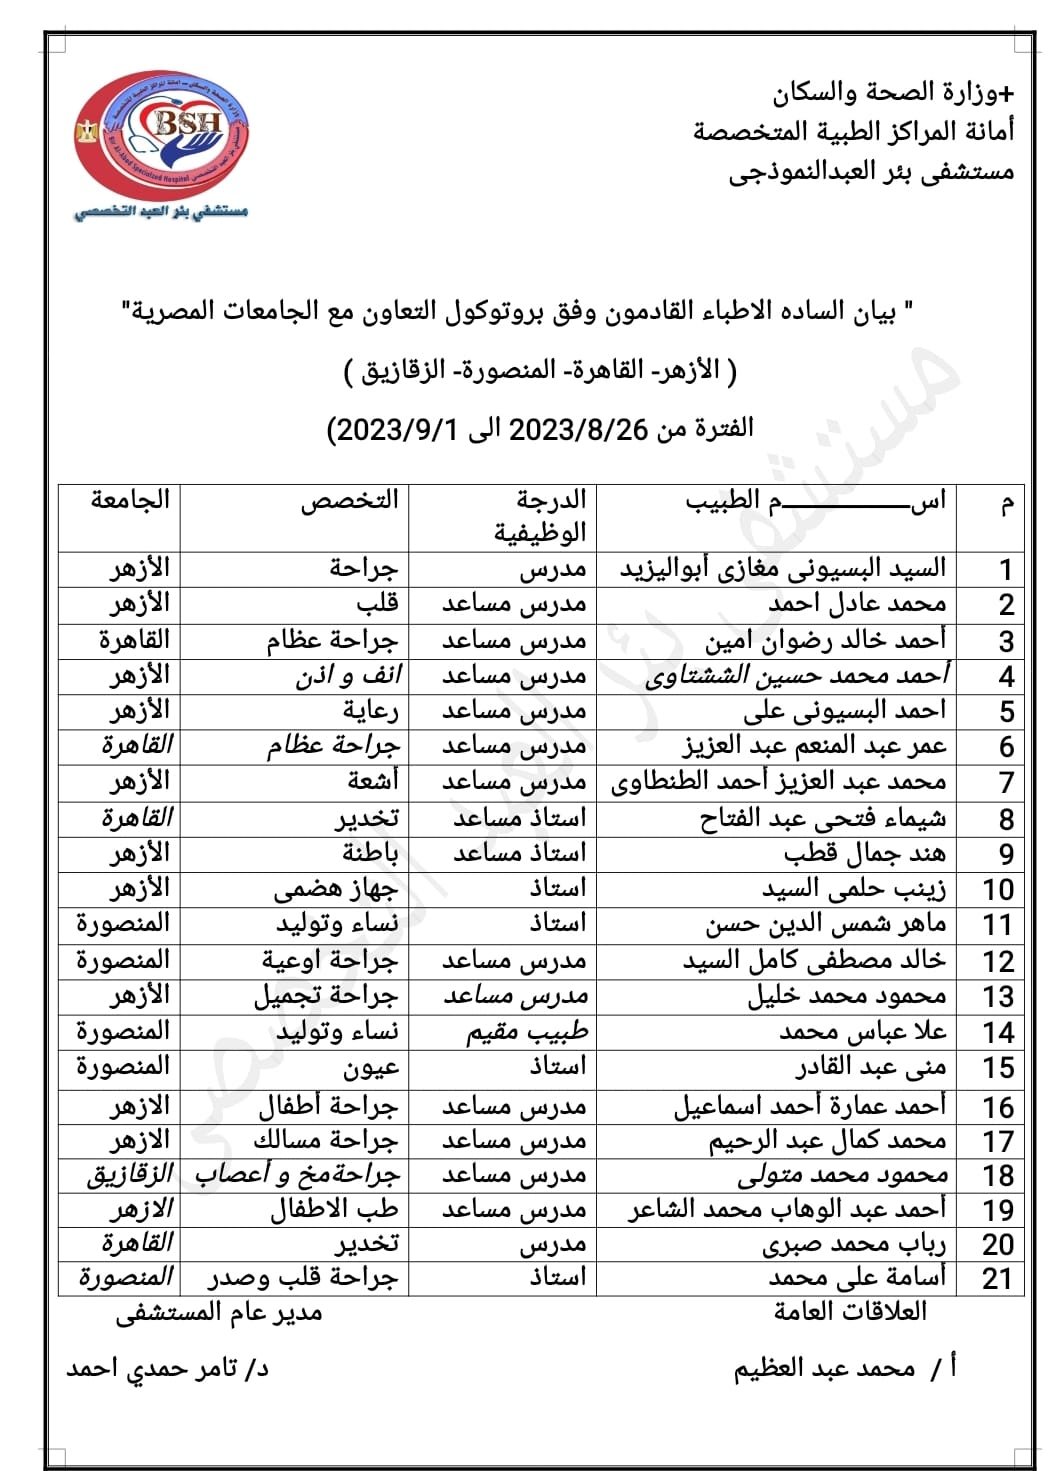 بيان اطباء الجامعات بمستشفى بئر العبد